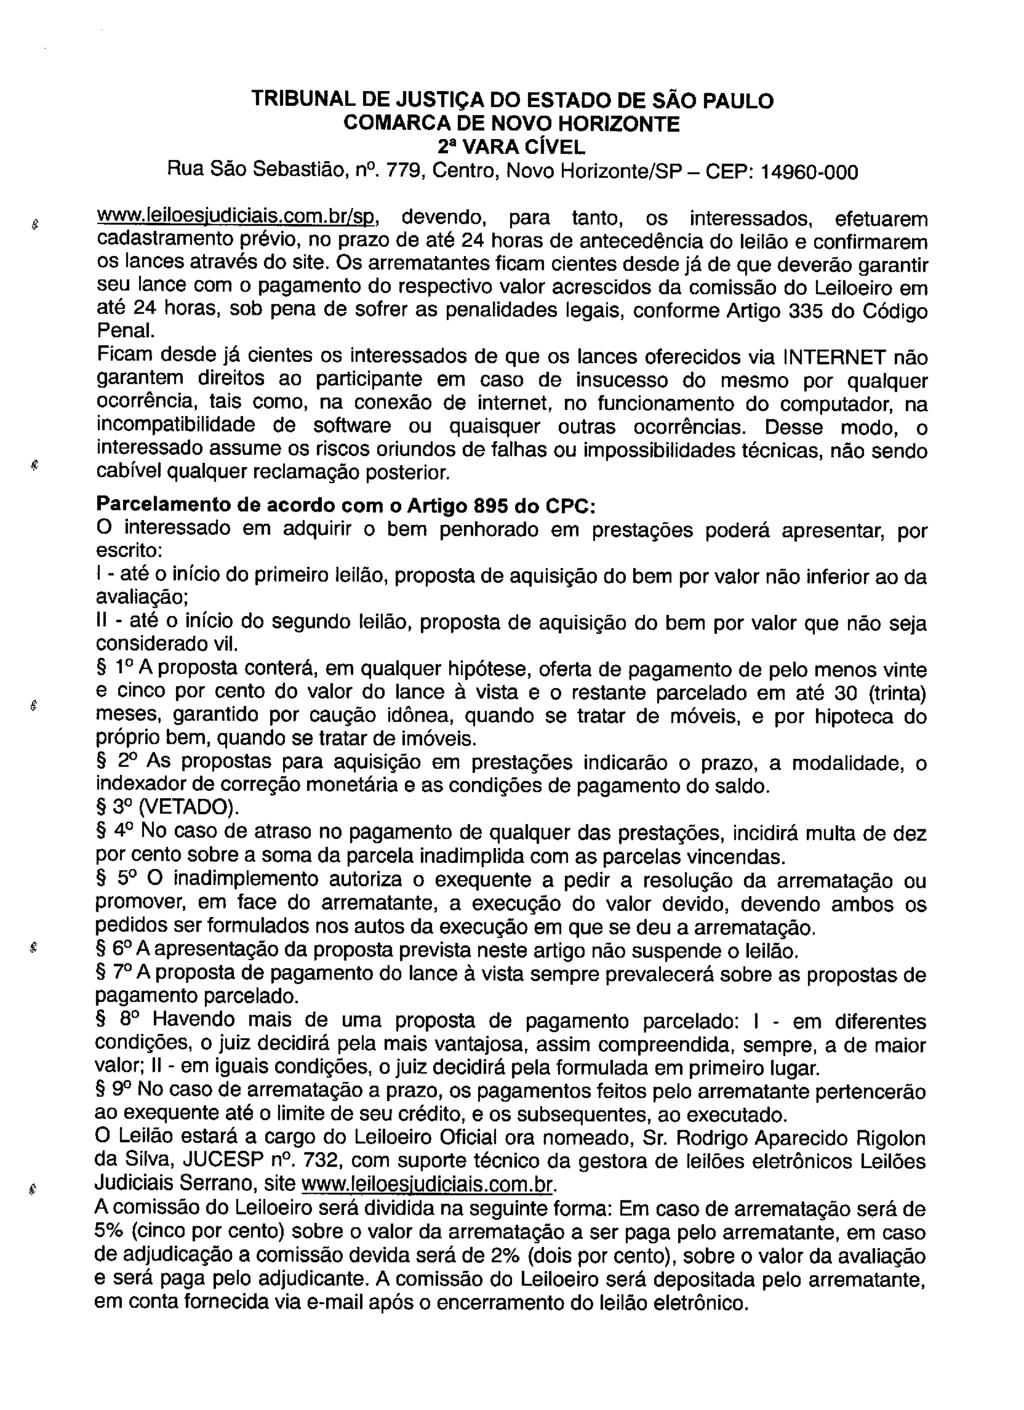 fls. 59 Este documento é cópia do original, assinado digitalmente por LUZIA REGIS DE OLIVEIRA DUARTE, liberado nos autos em 30/04/2019 às 14:49.